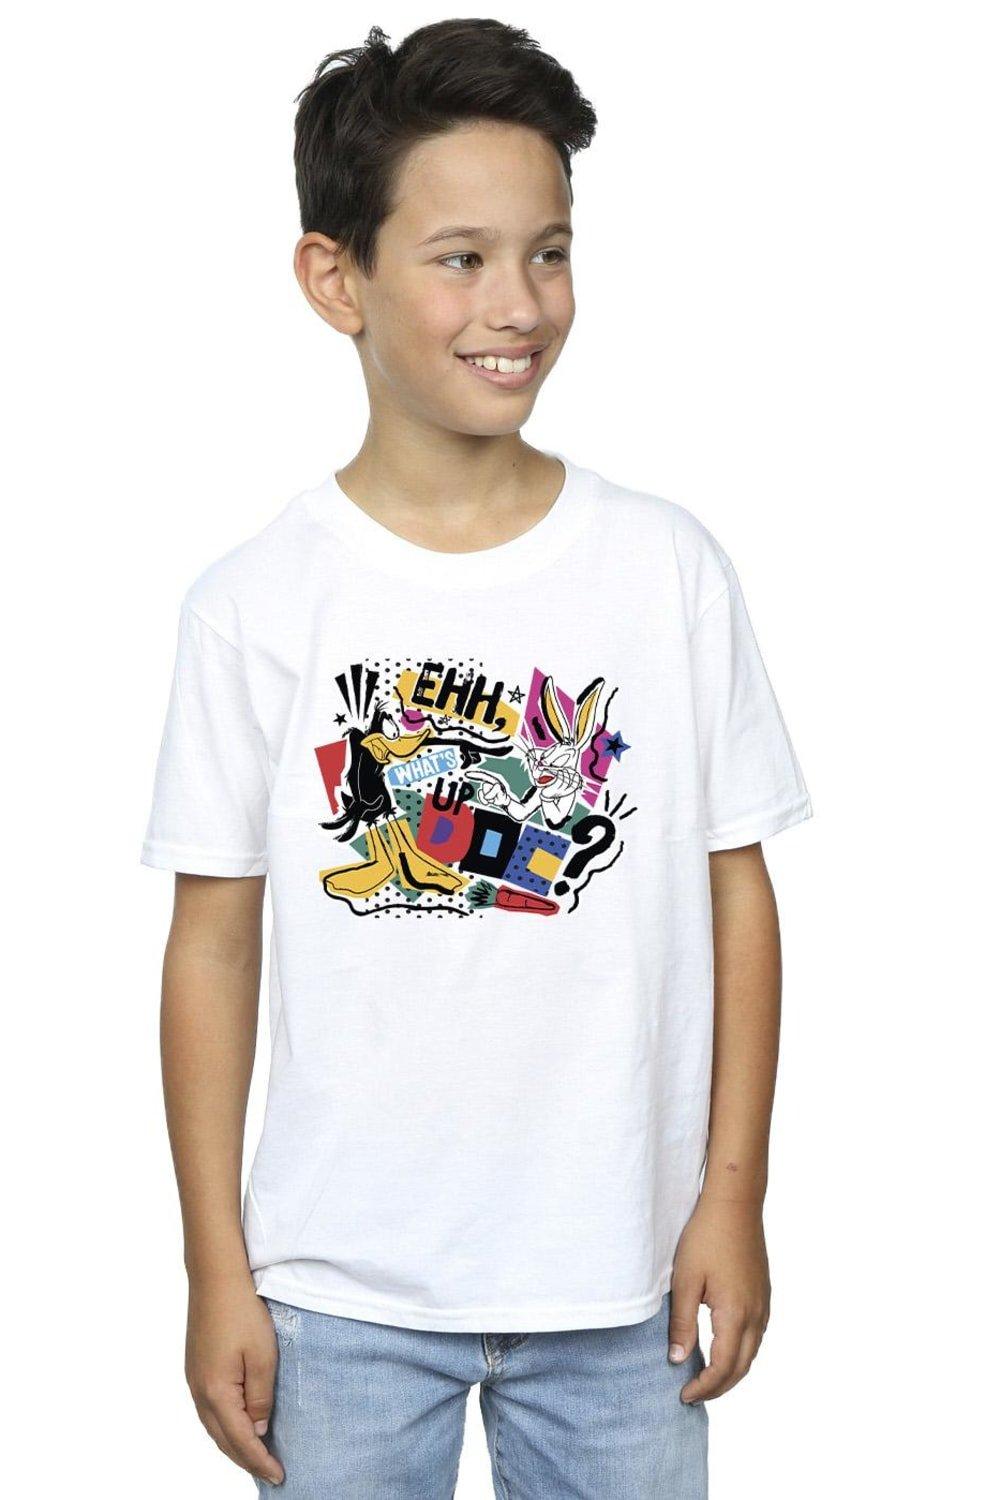 What’s Up Doc Pop Art T-Shirt